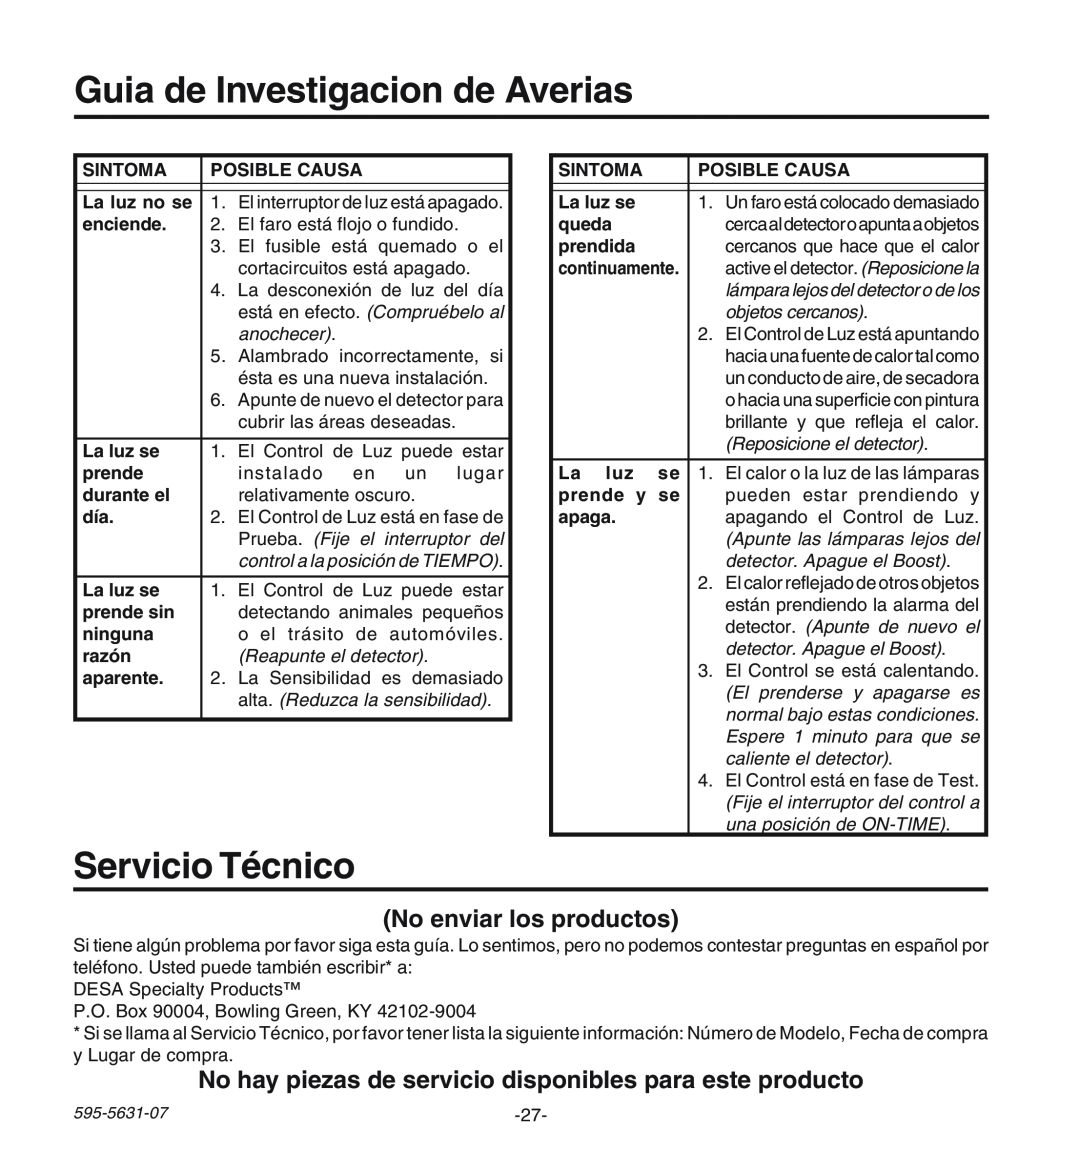 Desa HD-9240 manual Guia de Investigacion de Averias, Servicio Técnico, No enviar los productos 